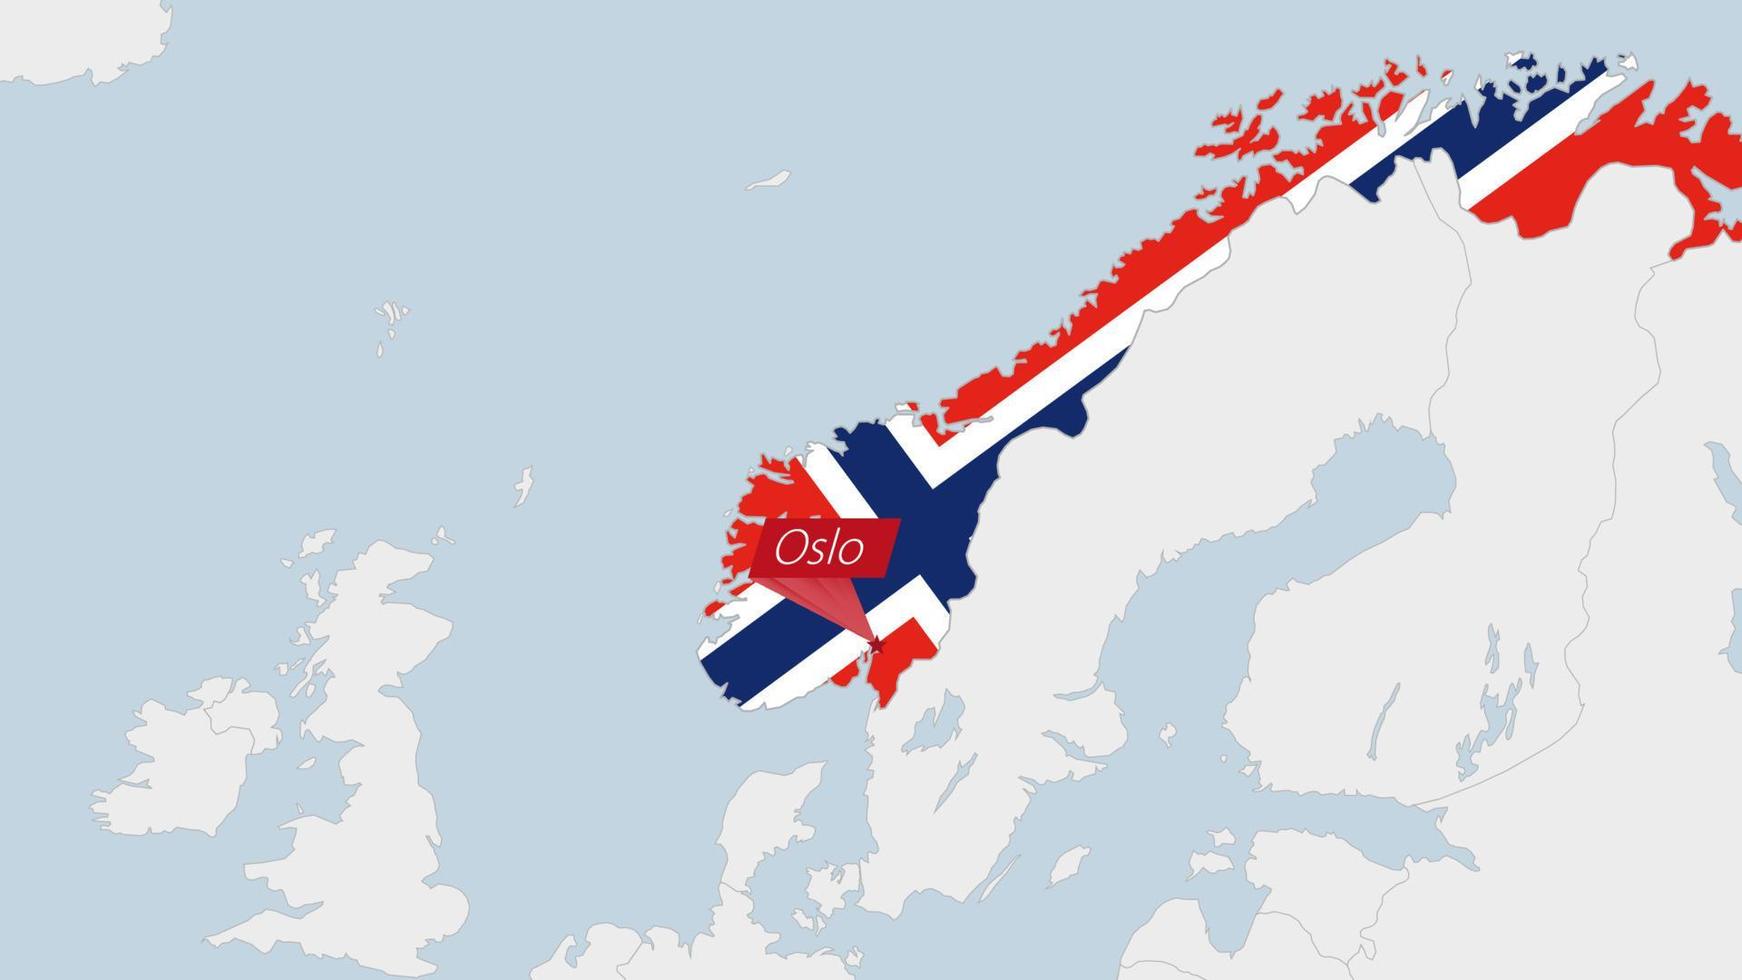 Norge Karta markerad i Norge flagga färger och stift av Land huvudstad oslo. vektor